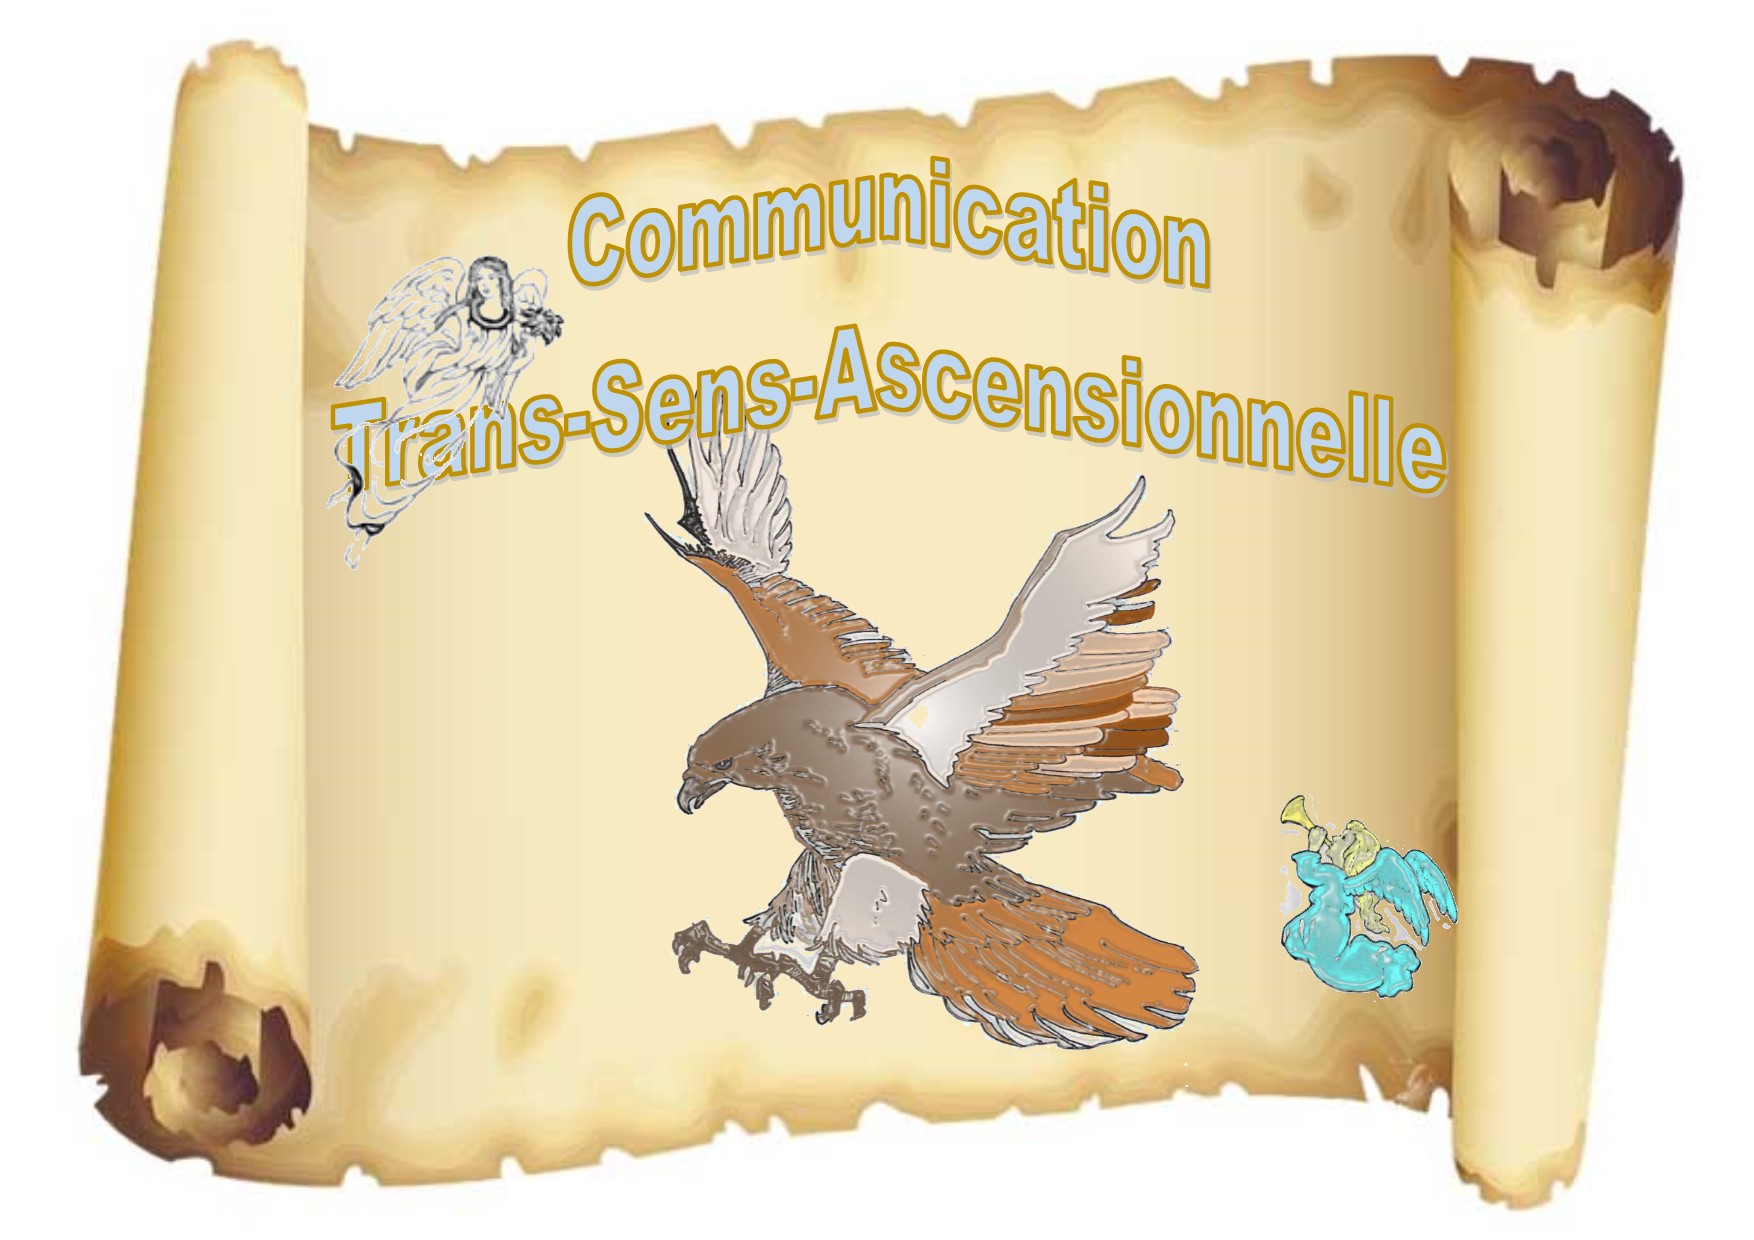 Communication Trans-Sens-Ascensionnelle